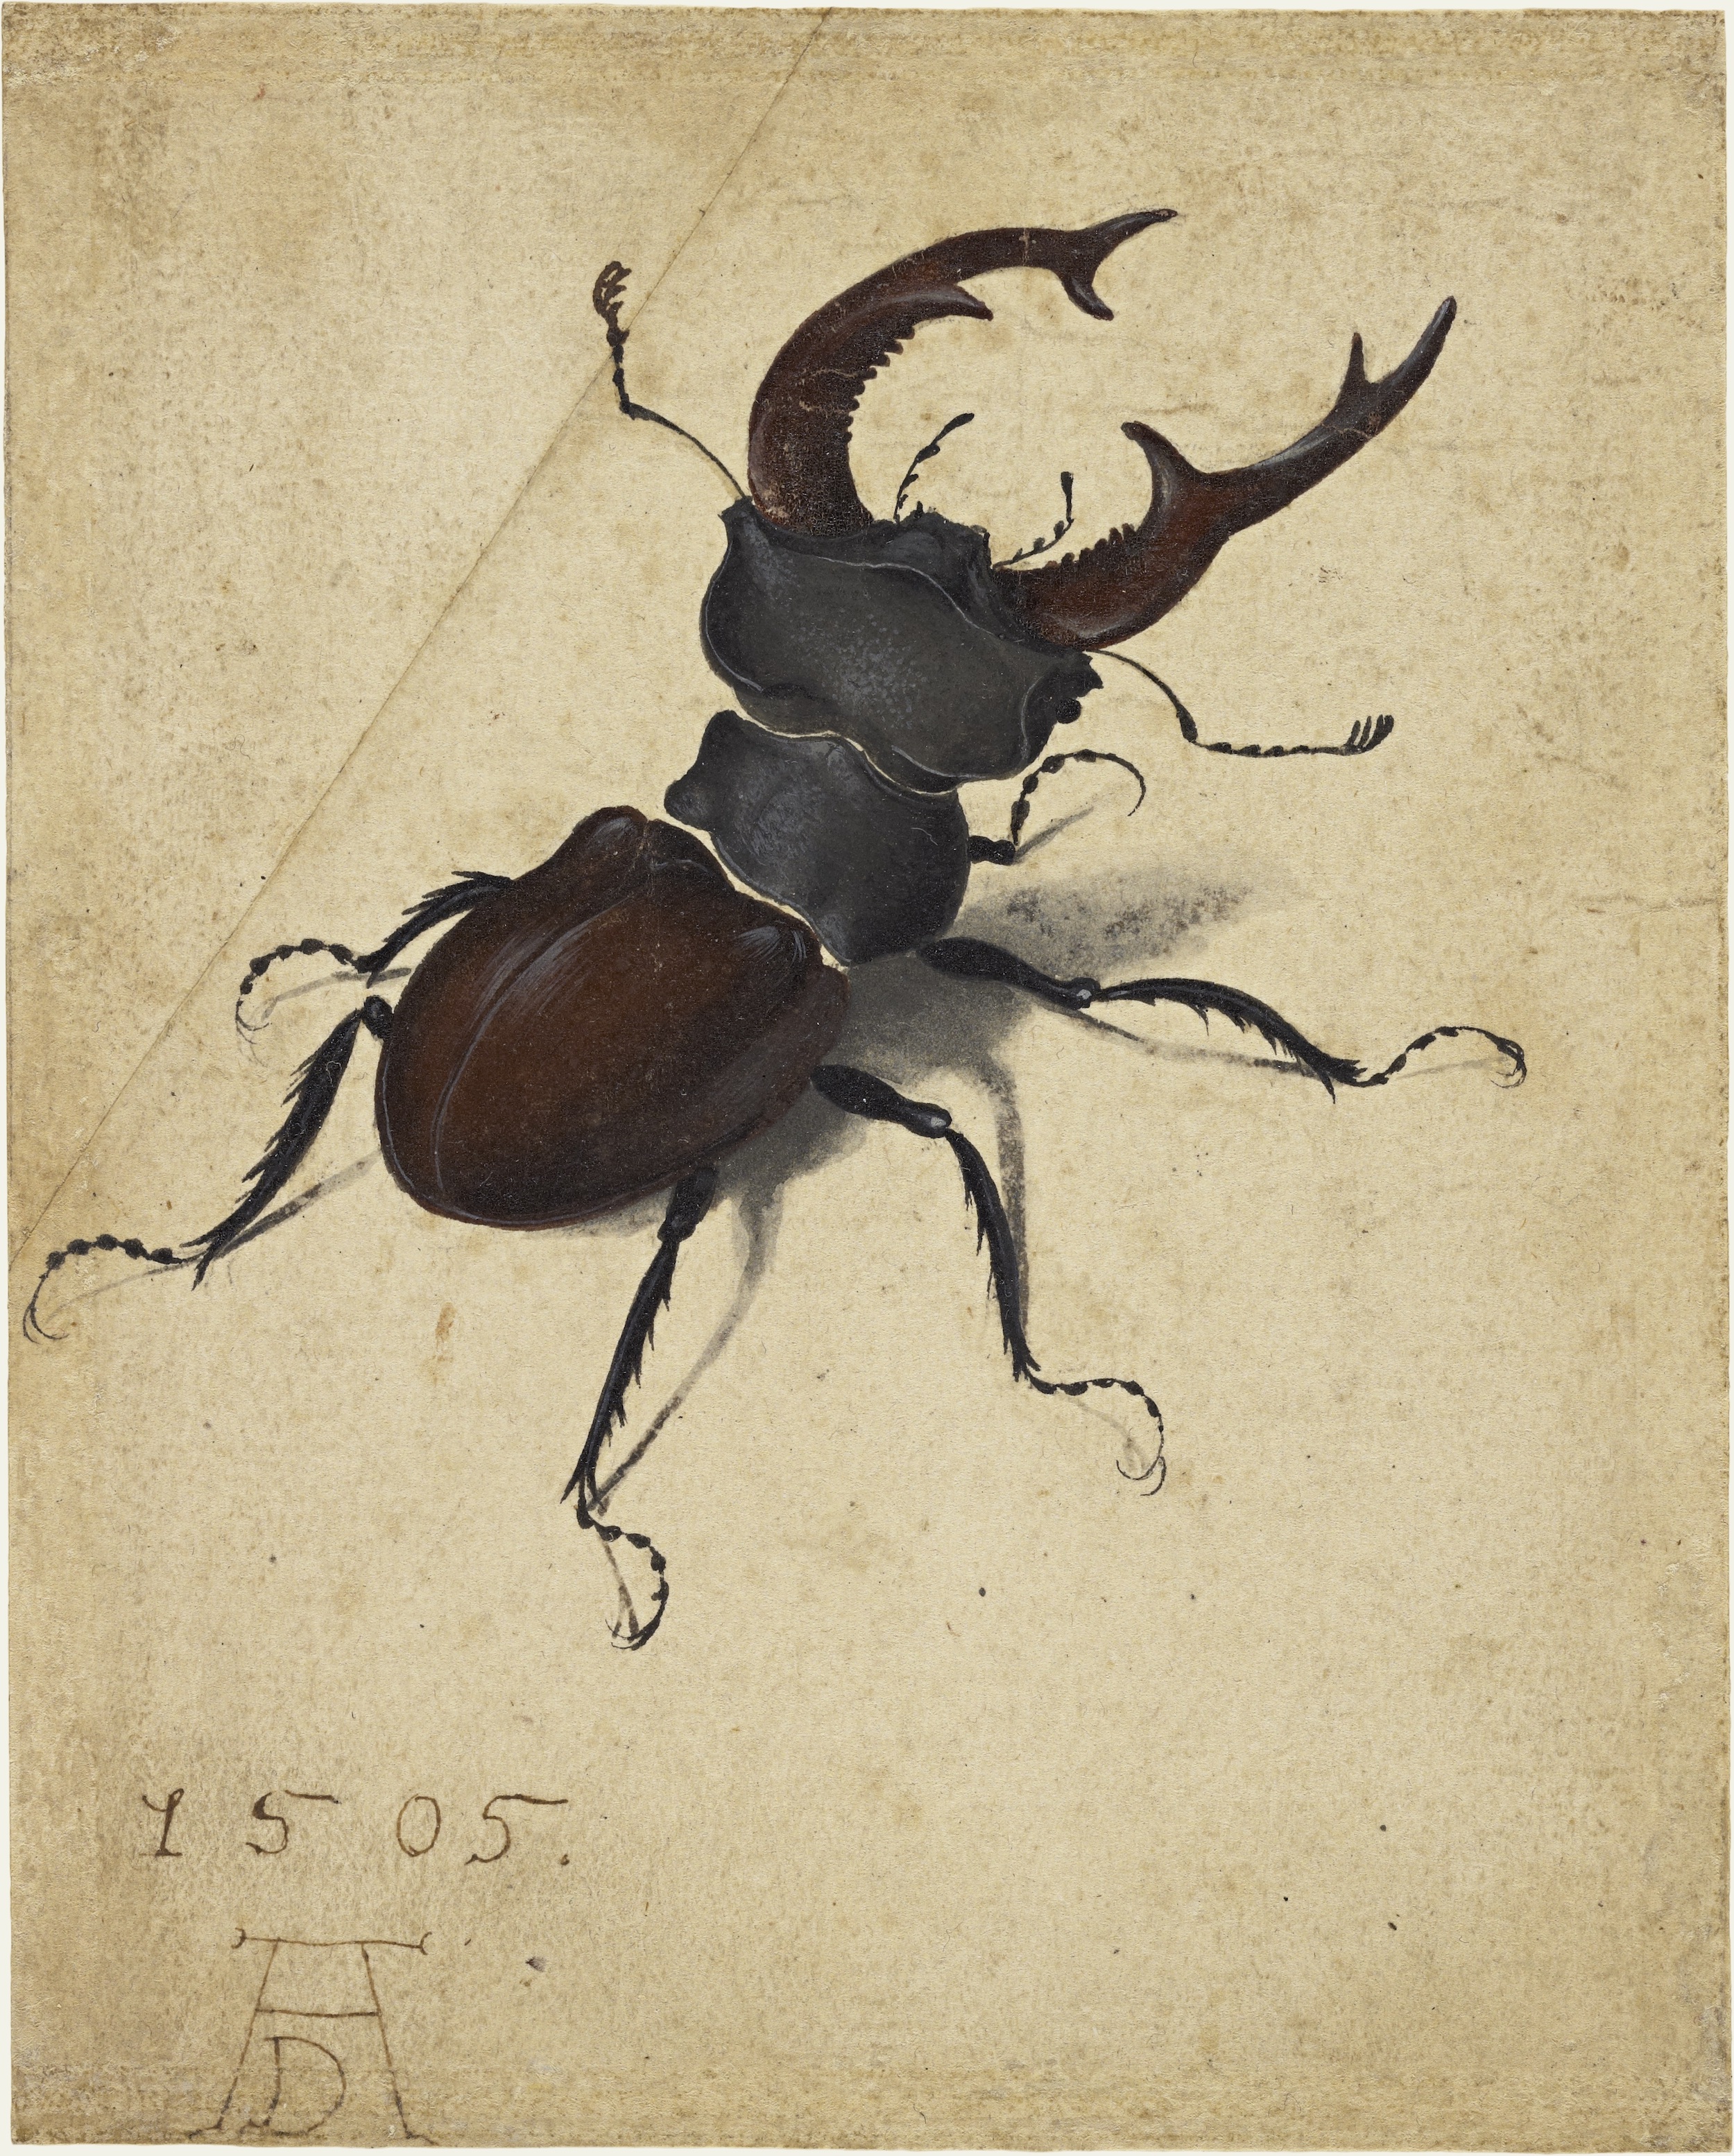 Geyik Böceği by Albrecht Dürer - 1505 